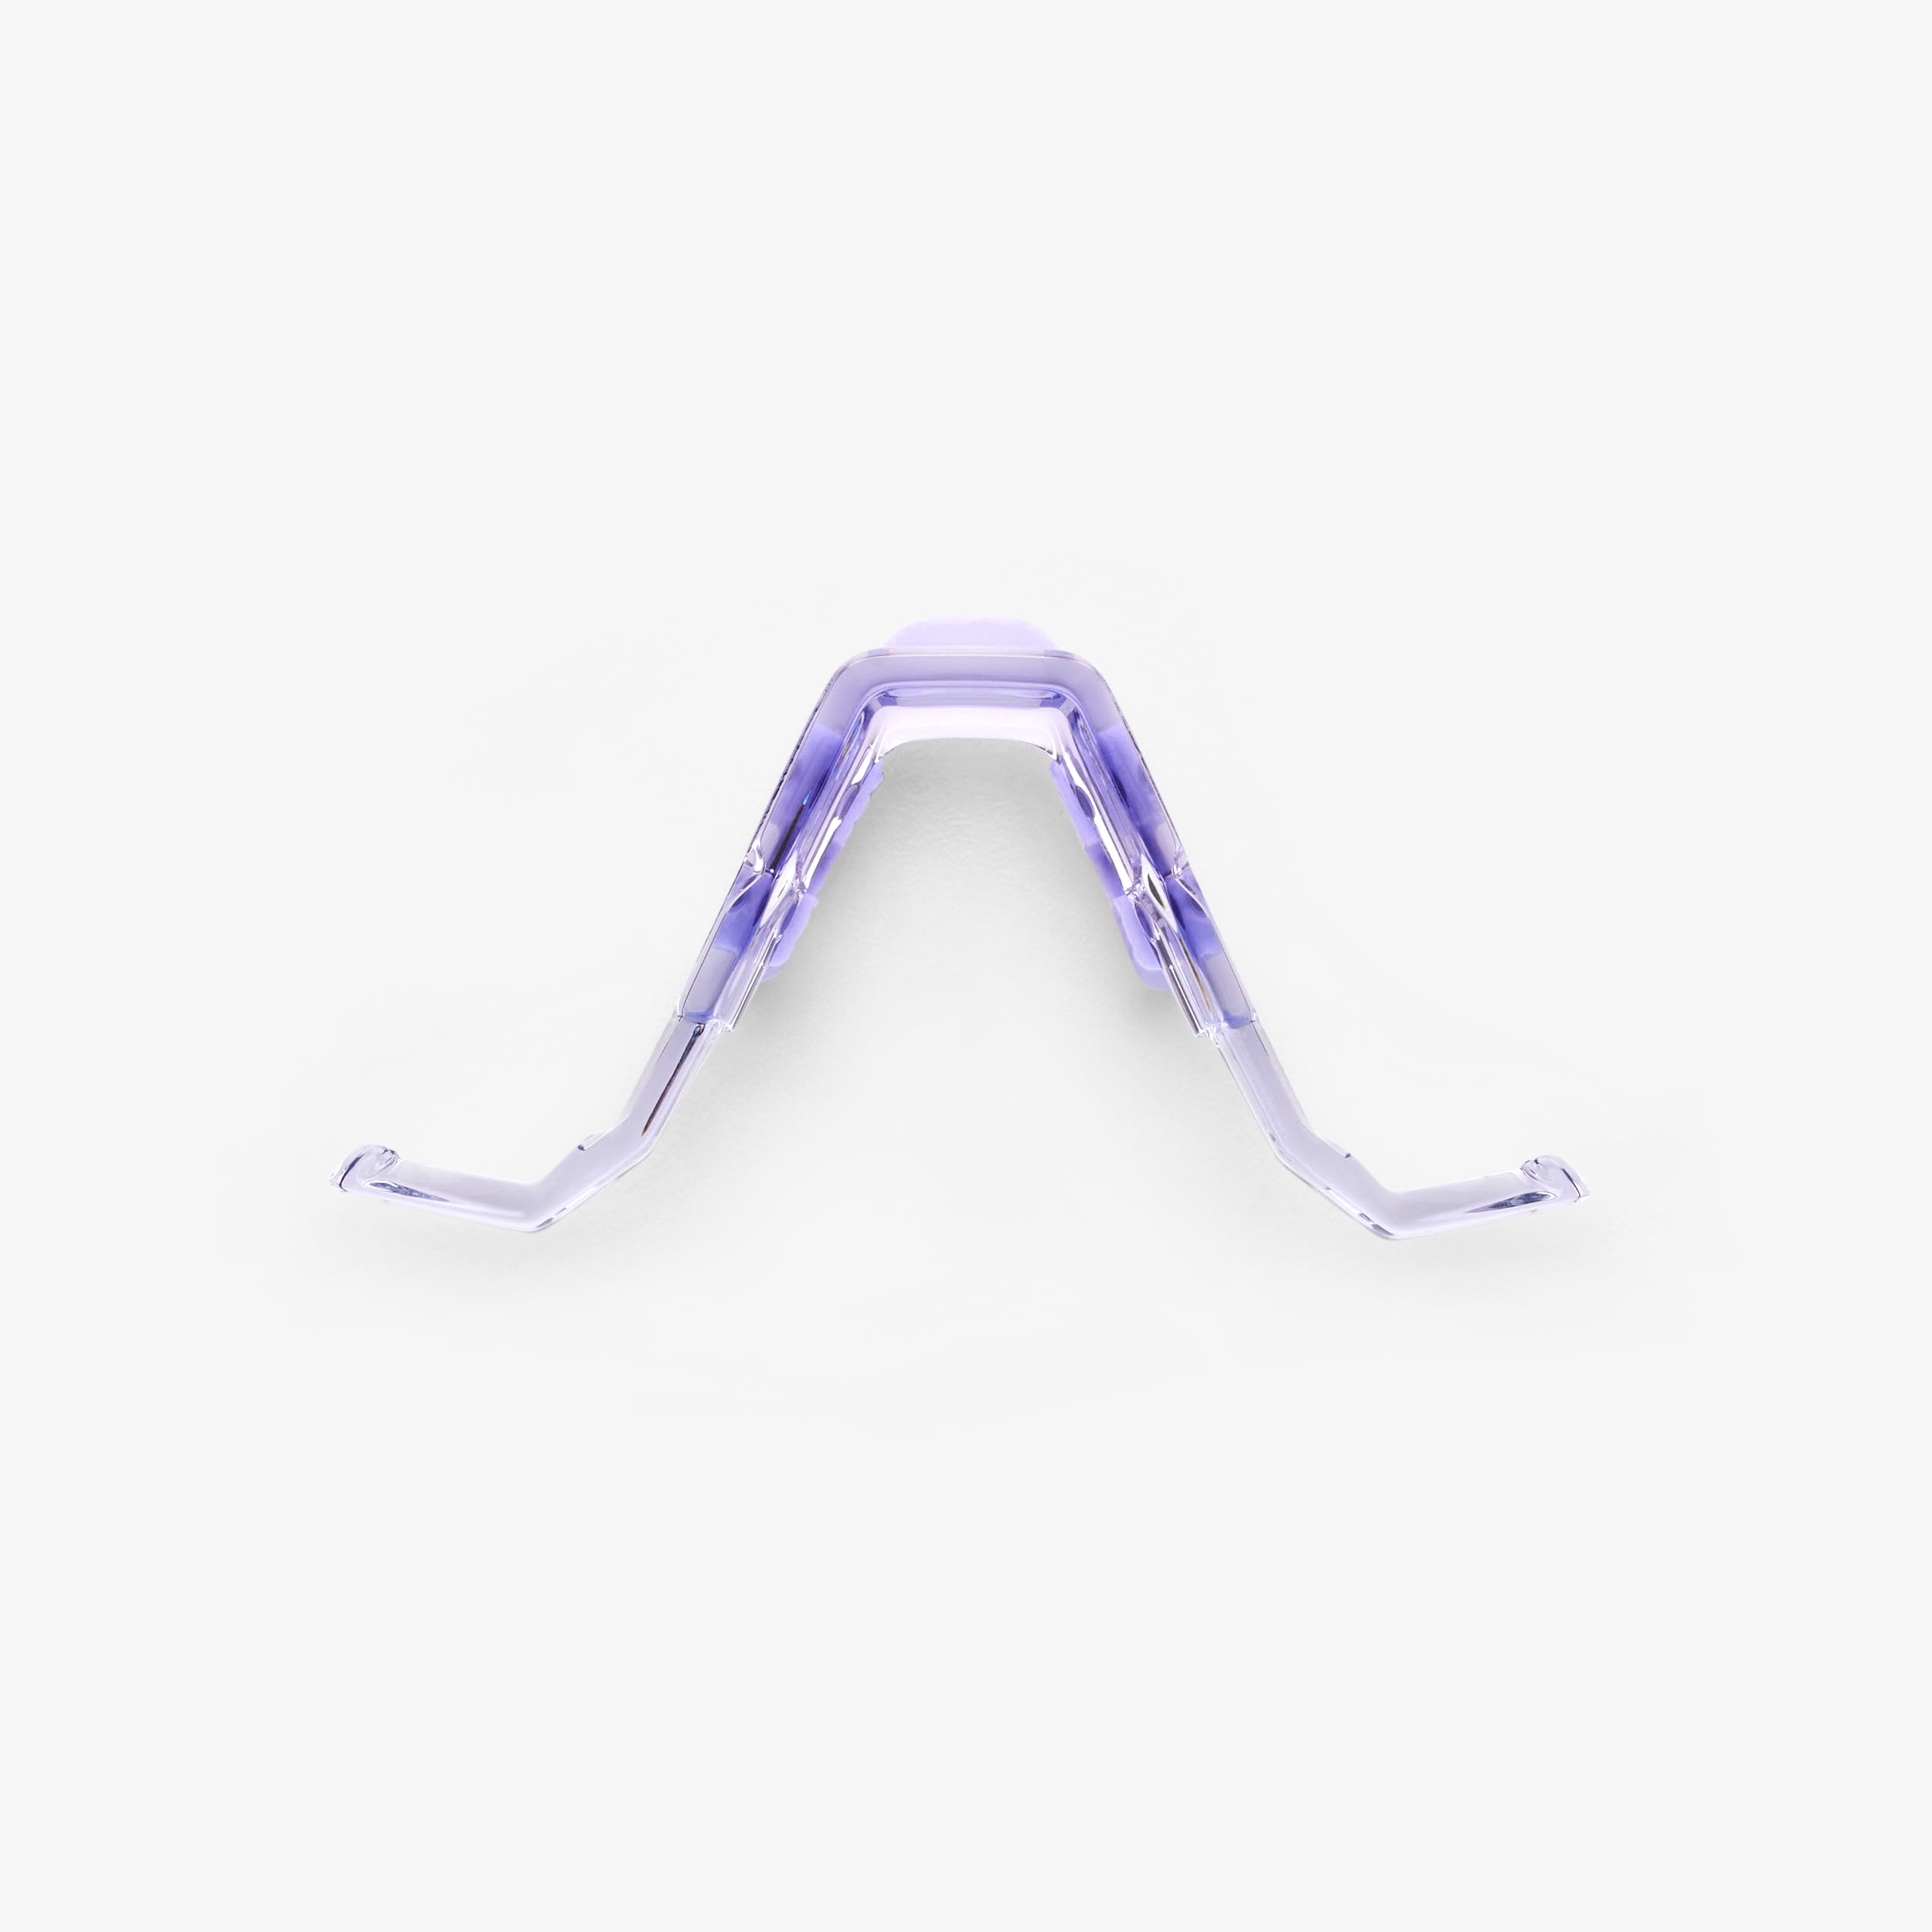 SPEEDCRAFT / S3 Nose Bridge Kit - Regular - Polished Translucent Lavender